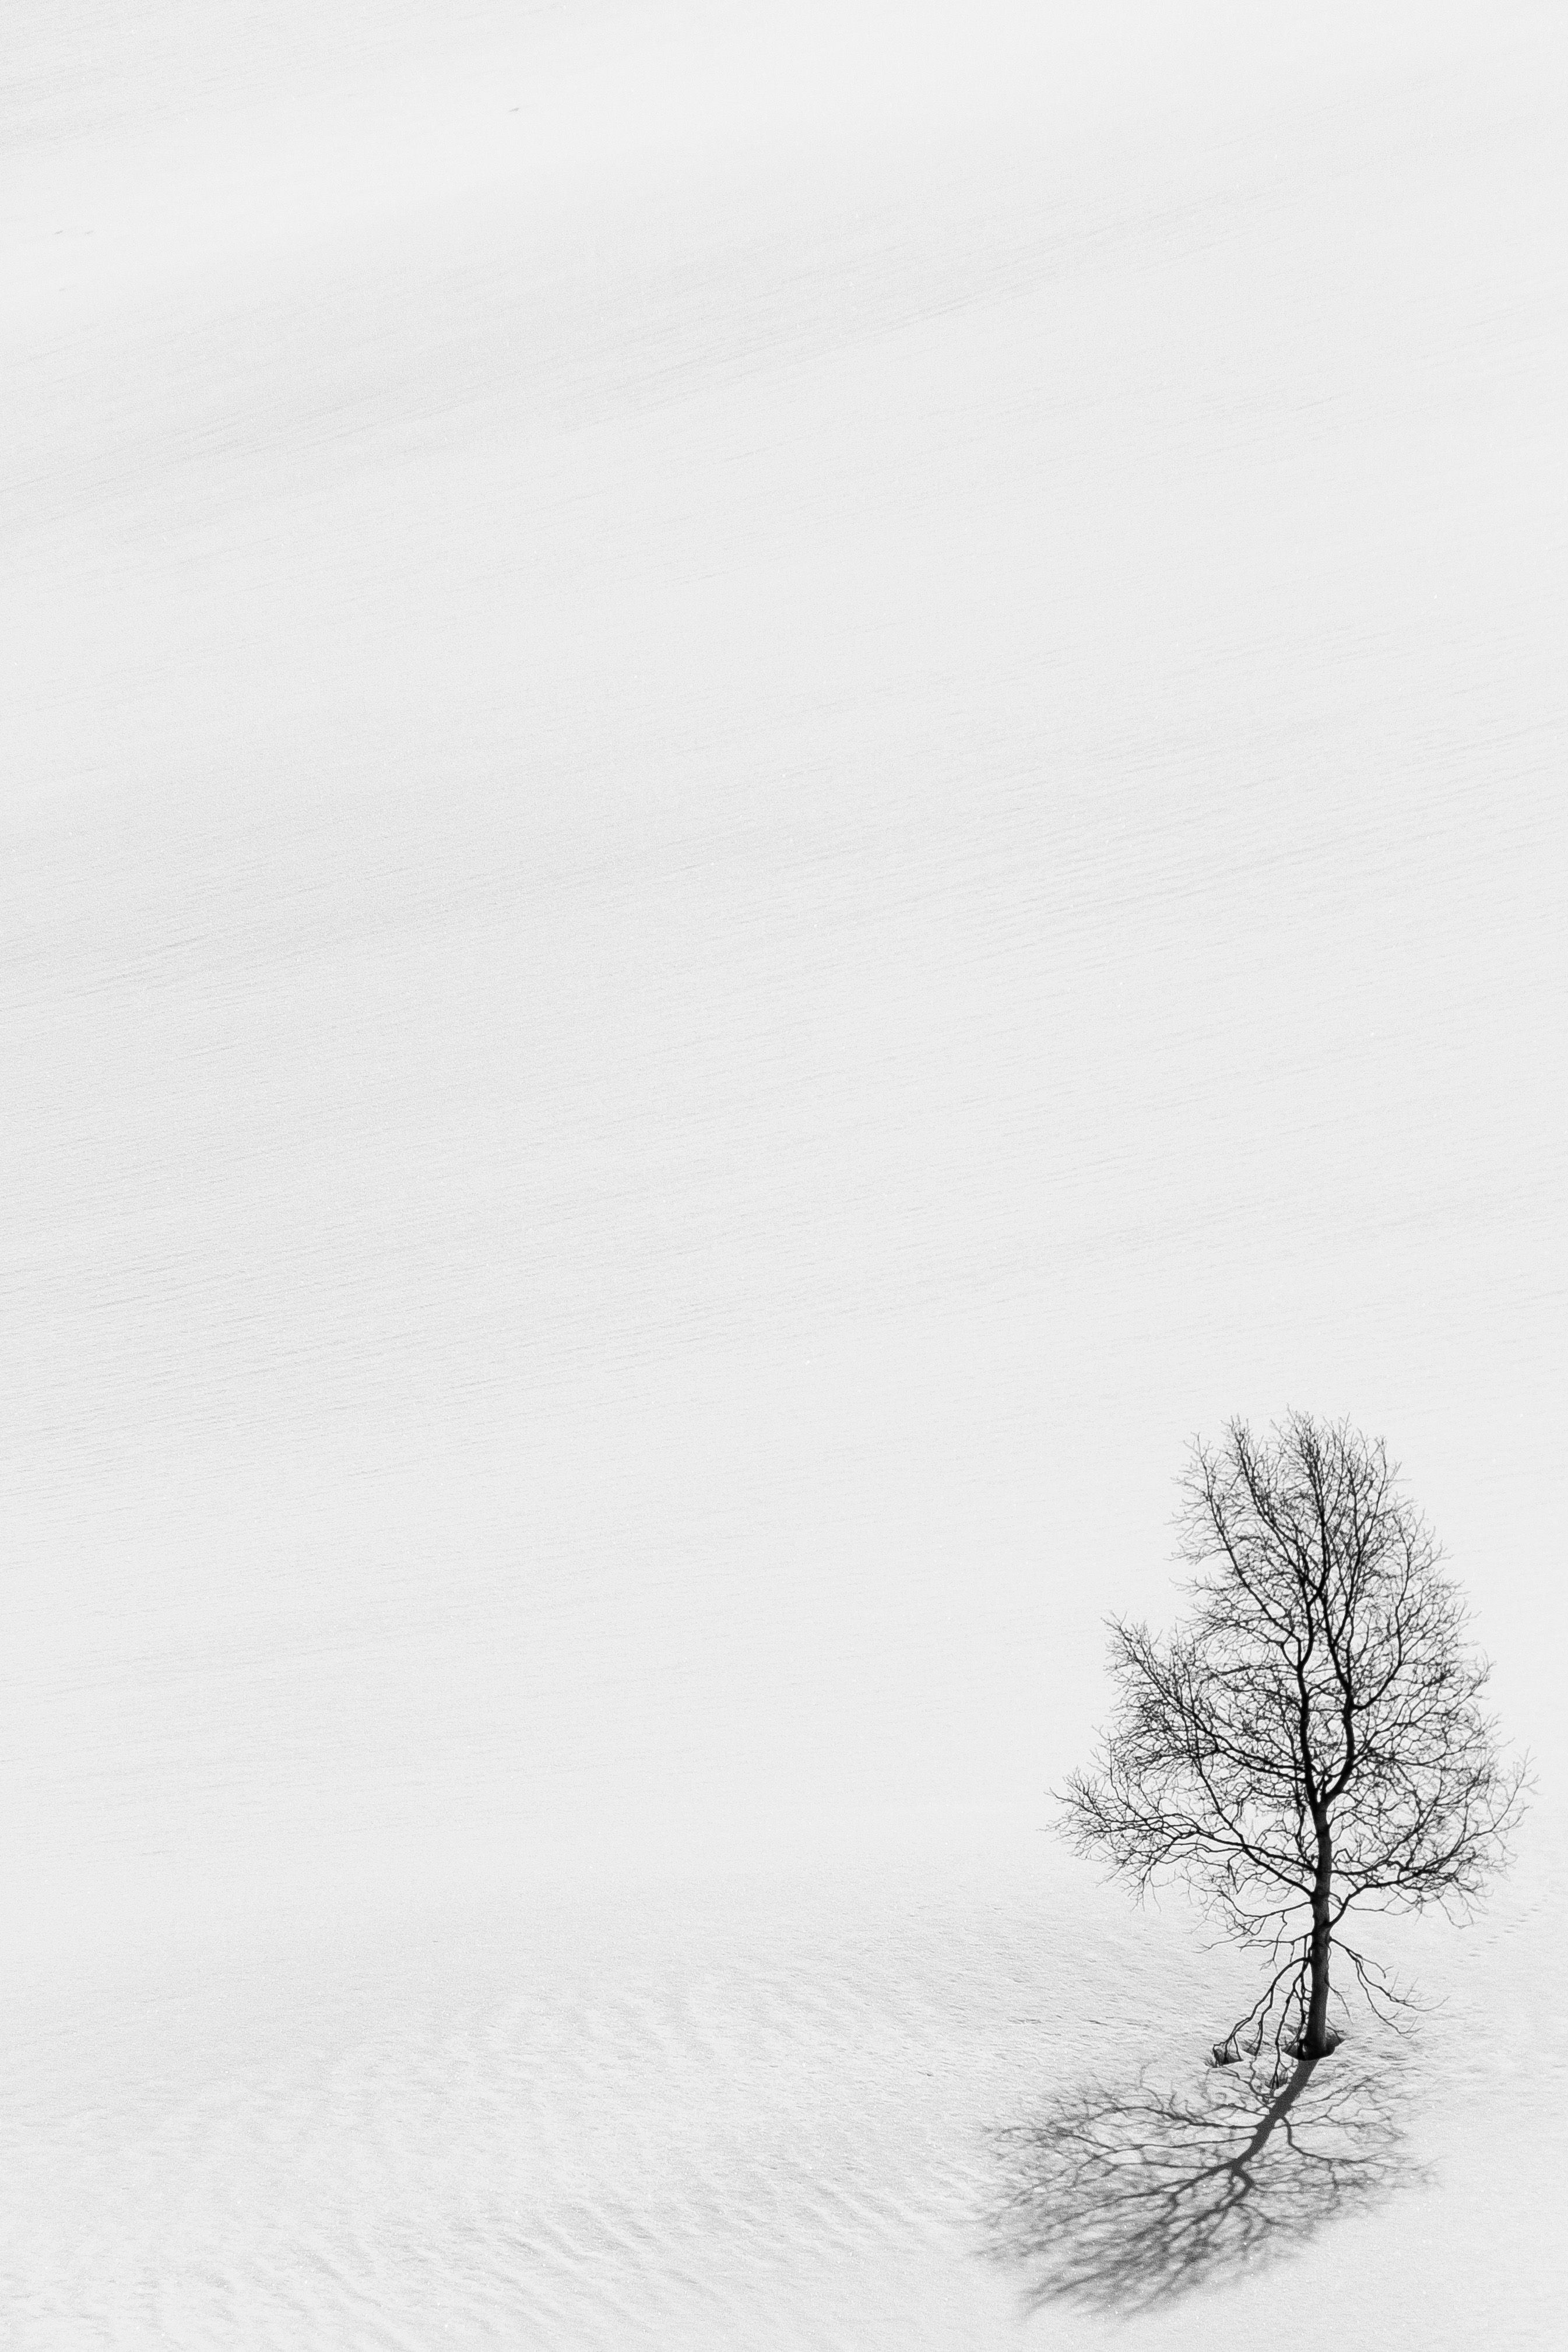 Desktop FHD chb, winter, nature, snow, wood, tree, minimalism, bw